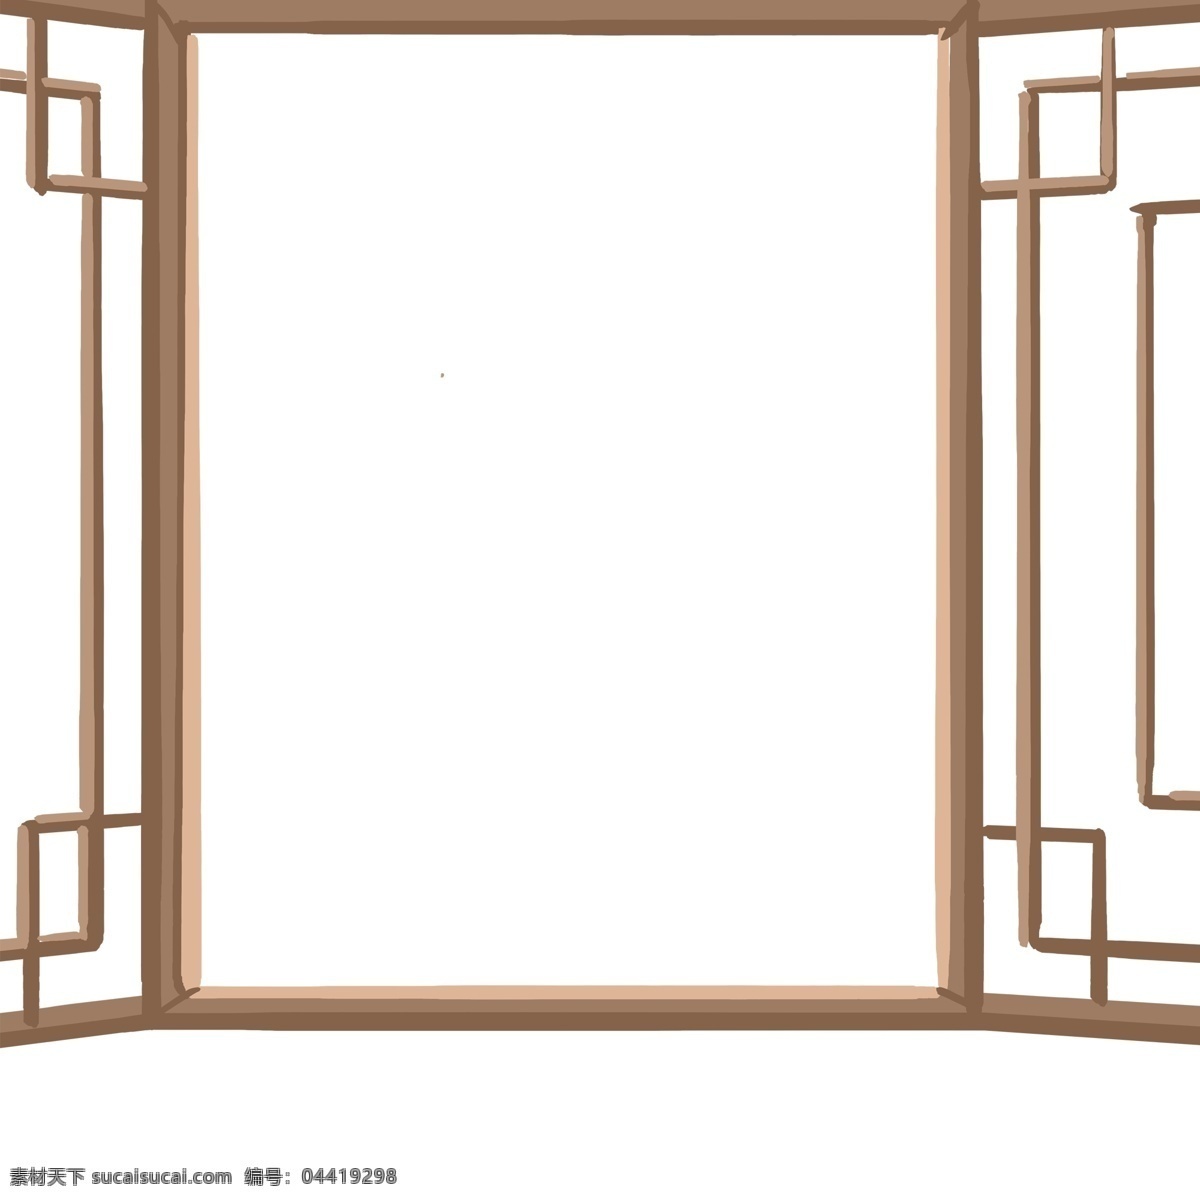 古风 复古 窗子 典雅 古典 唯美 手绘 树叶 棕色 清新 窗户 窗棂 竹叶 简约 绿色